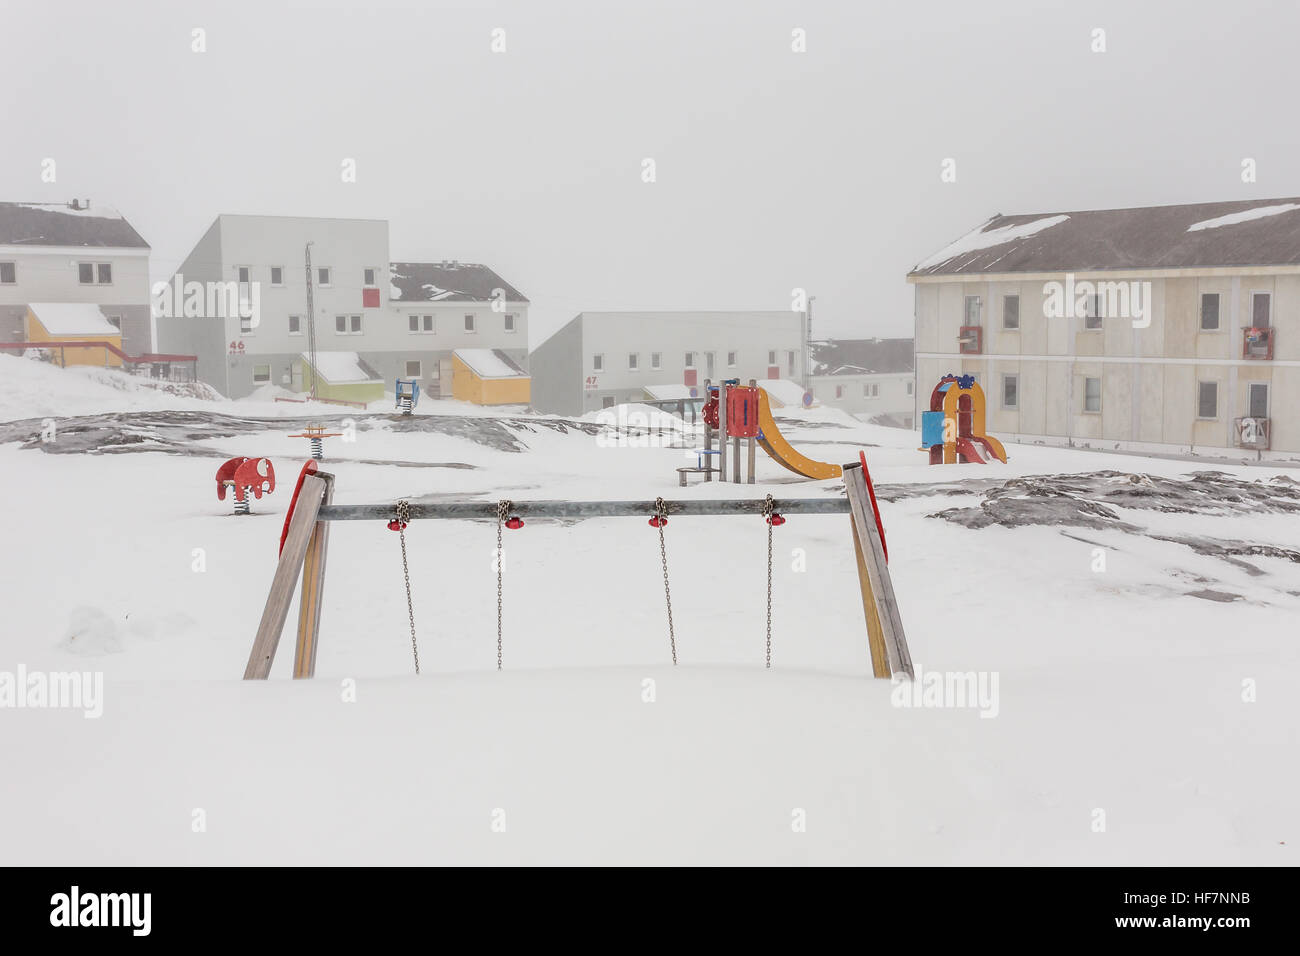 Dura infancia groenlandés,patio cubierto de nieve y hielo en Nuuk, Groenlandia ciudad Foto de stock